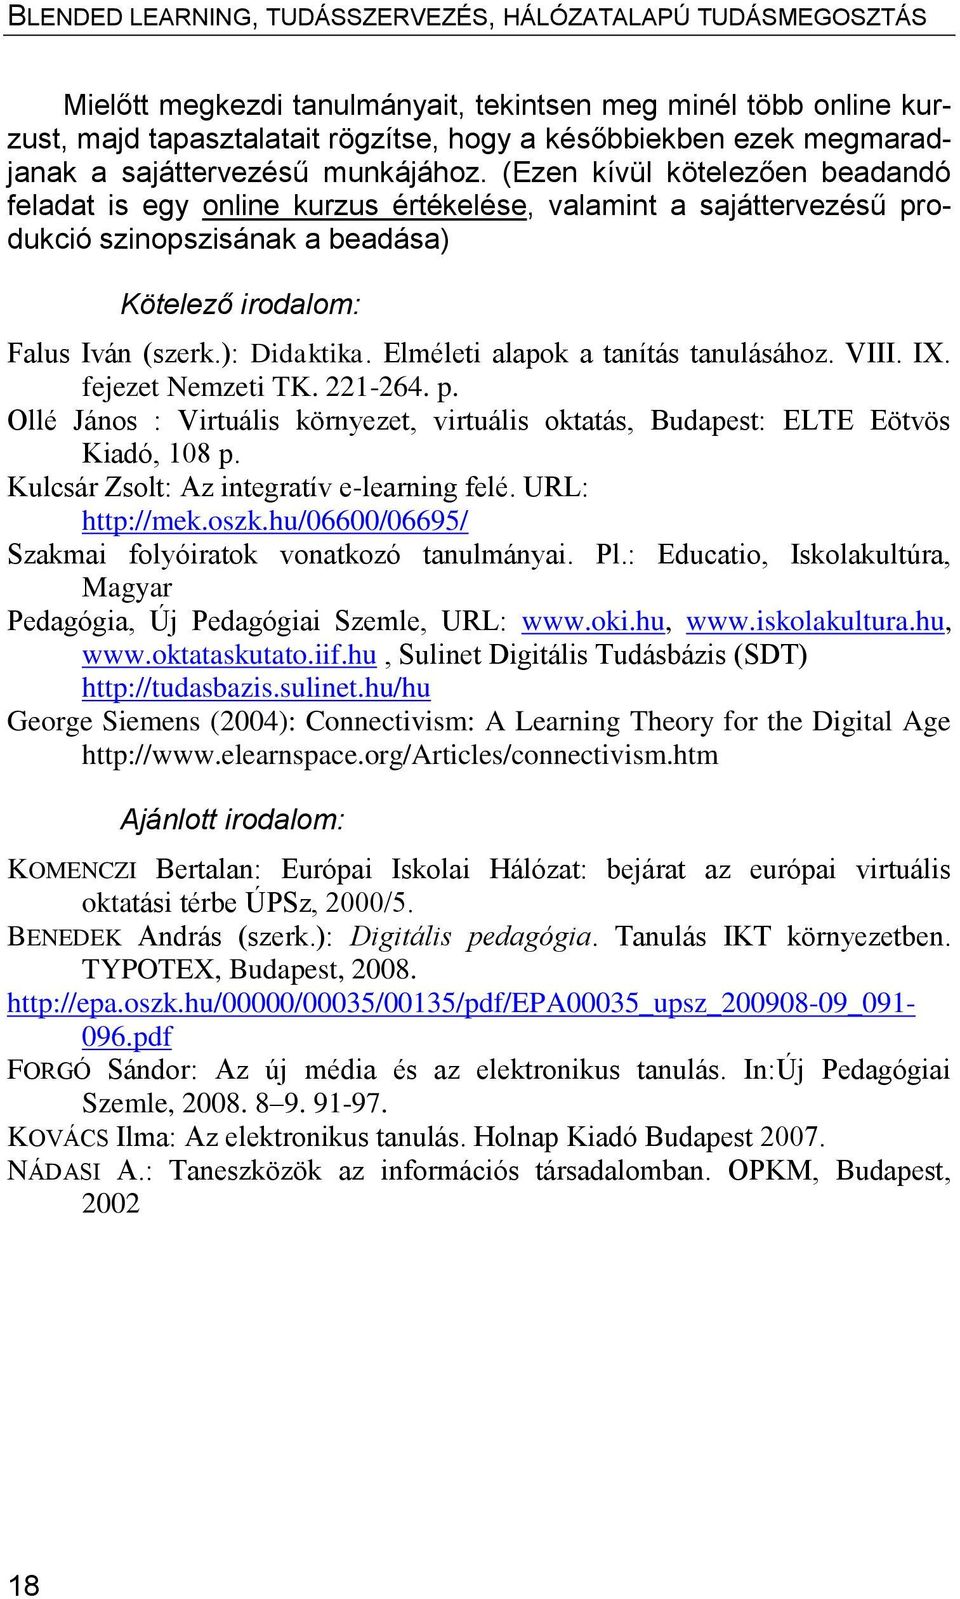 Elméleti alapok a tanítás tanulásához. VIII. IX. fejezet Nemzeti TK. 221-264. p. Ollé János : Virtuális környezet, virtuális oktatás, Budapest: ELTE Eötvös Kiadó, 108 p.